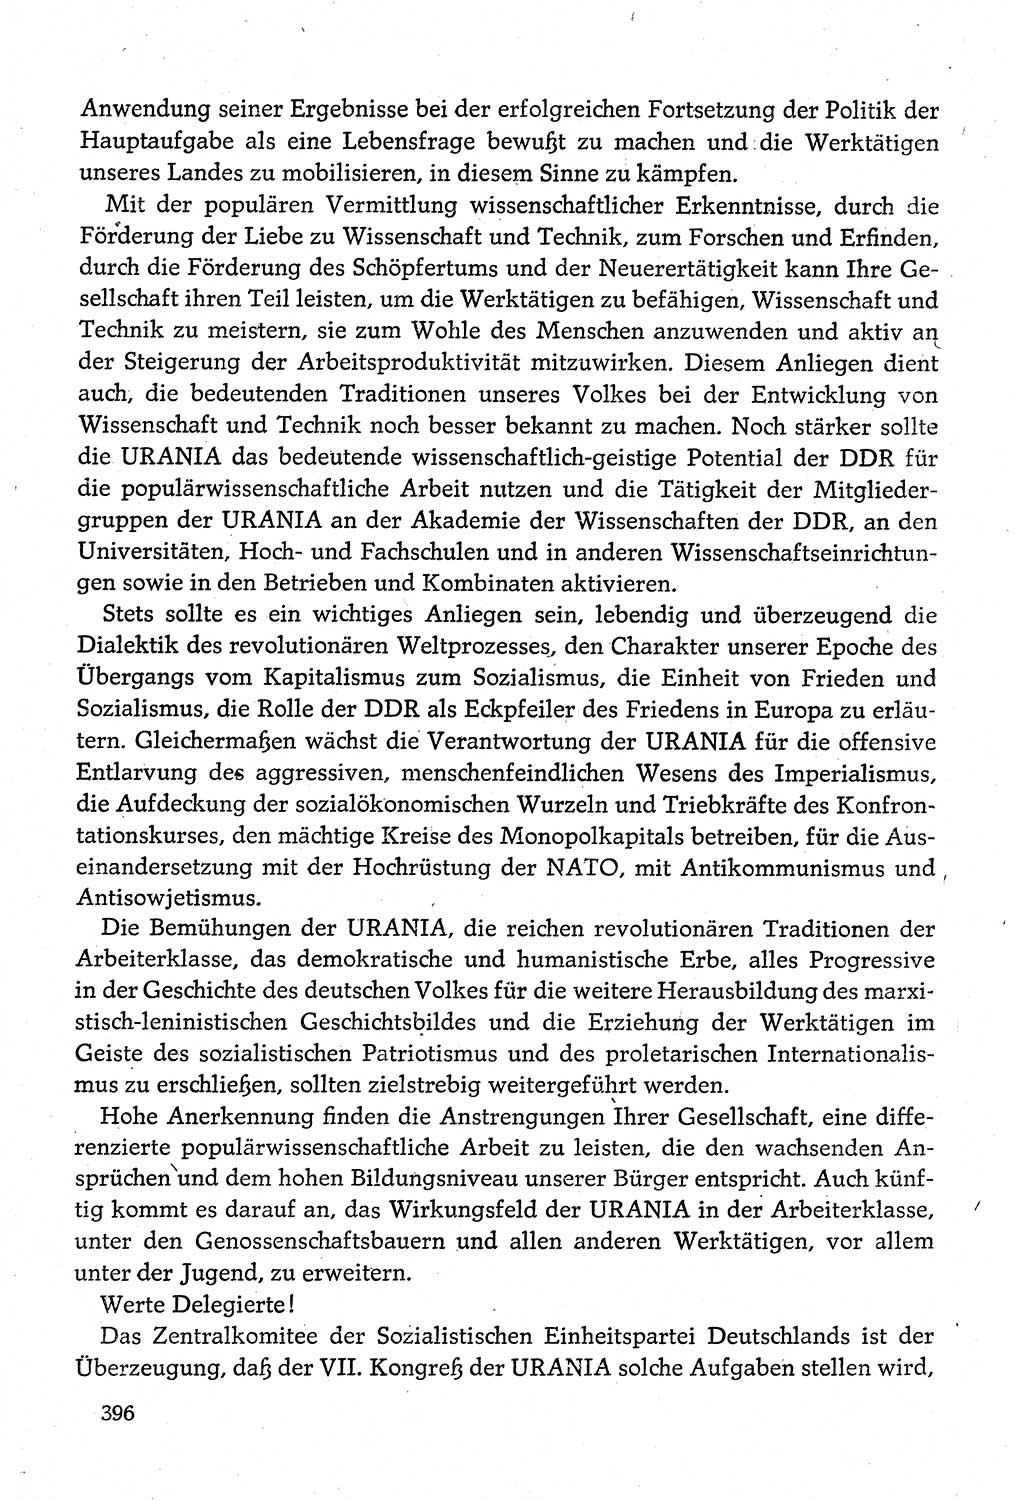 Dokumente der Sozialistischen Einheitspartei Deutschlands (SED) [Deutsche Demokratische Republik (DDR)] 1980-1981, Seite 396 (Dok. SED DDR 1980-1981, S. 396)